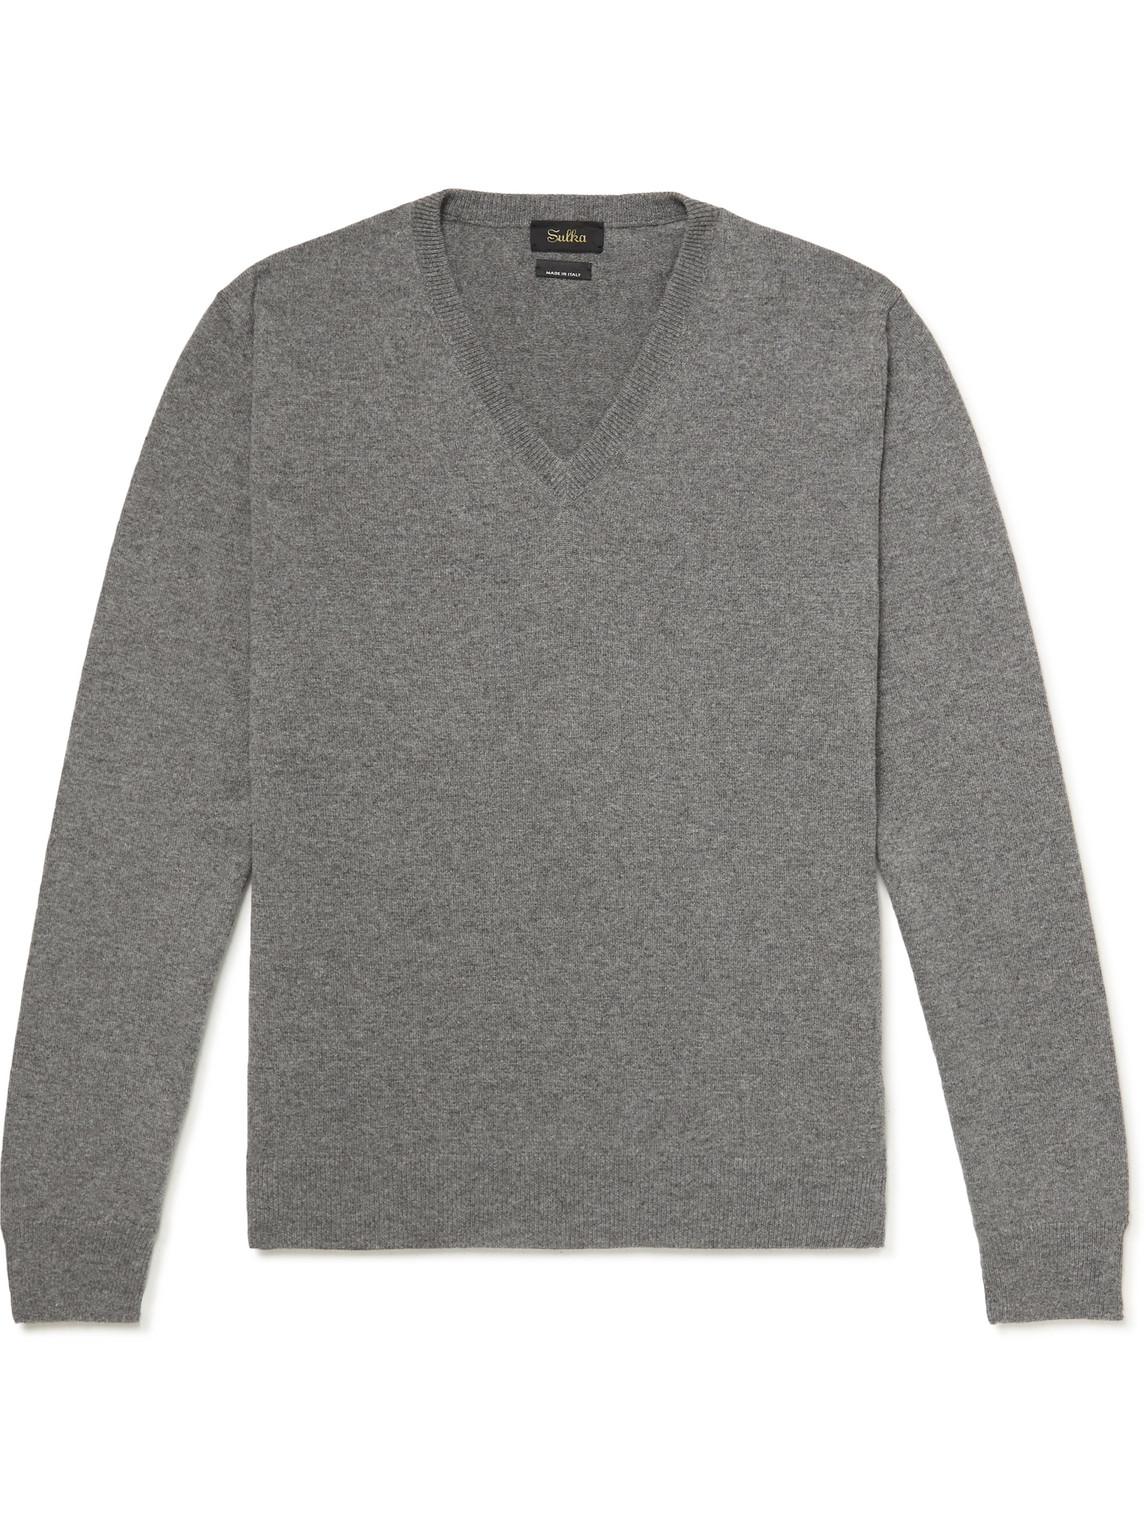 Sulka Cashmere Sweater In Gray